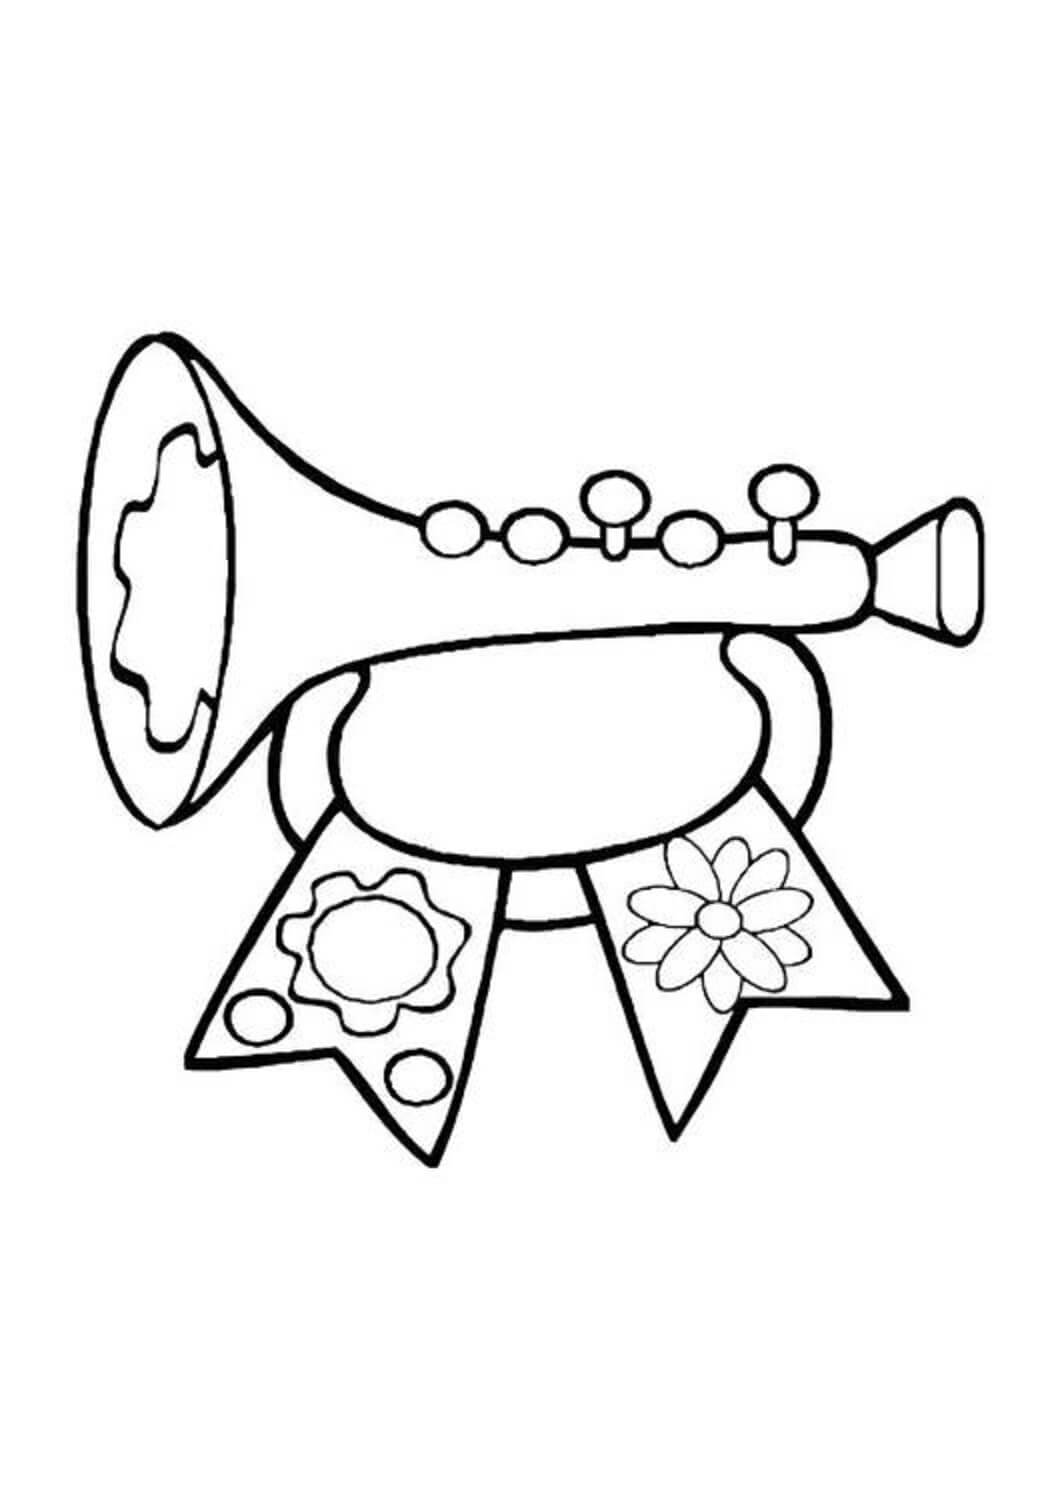 Trompette Pour Les Enfants coloring page